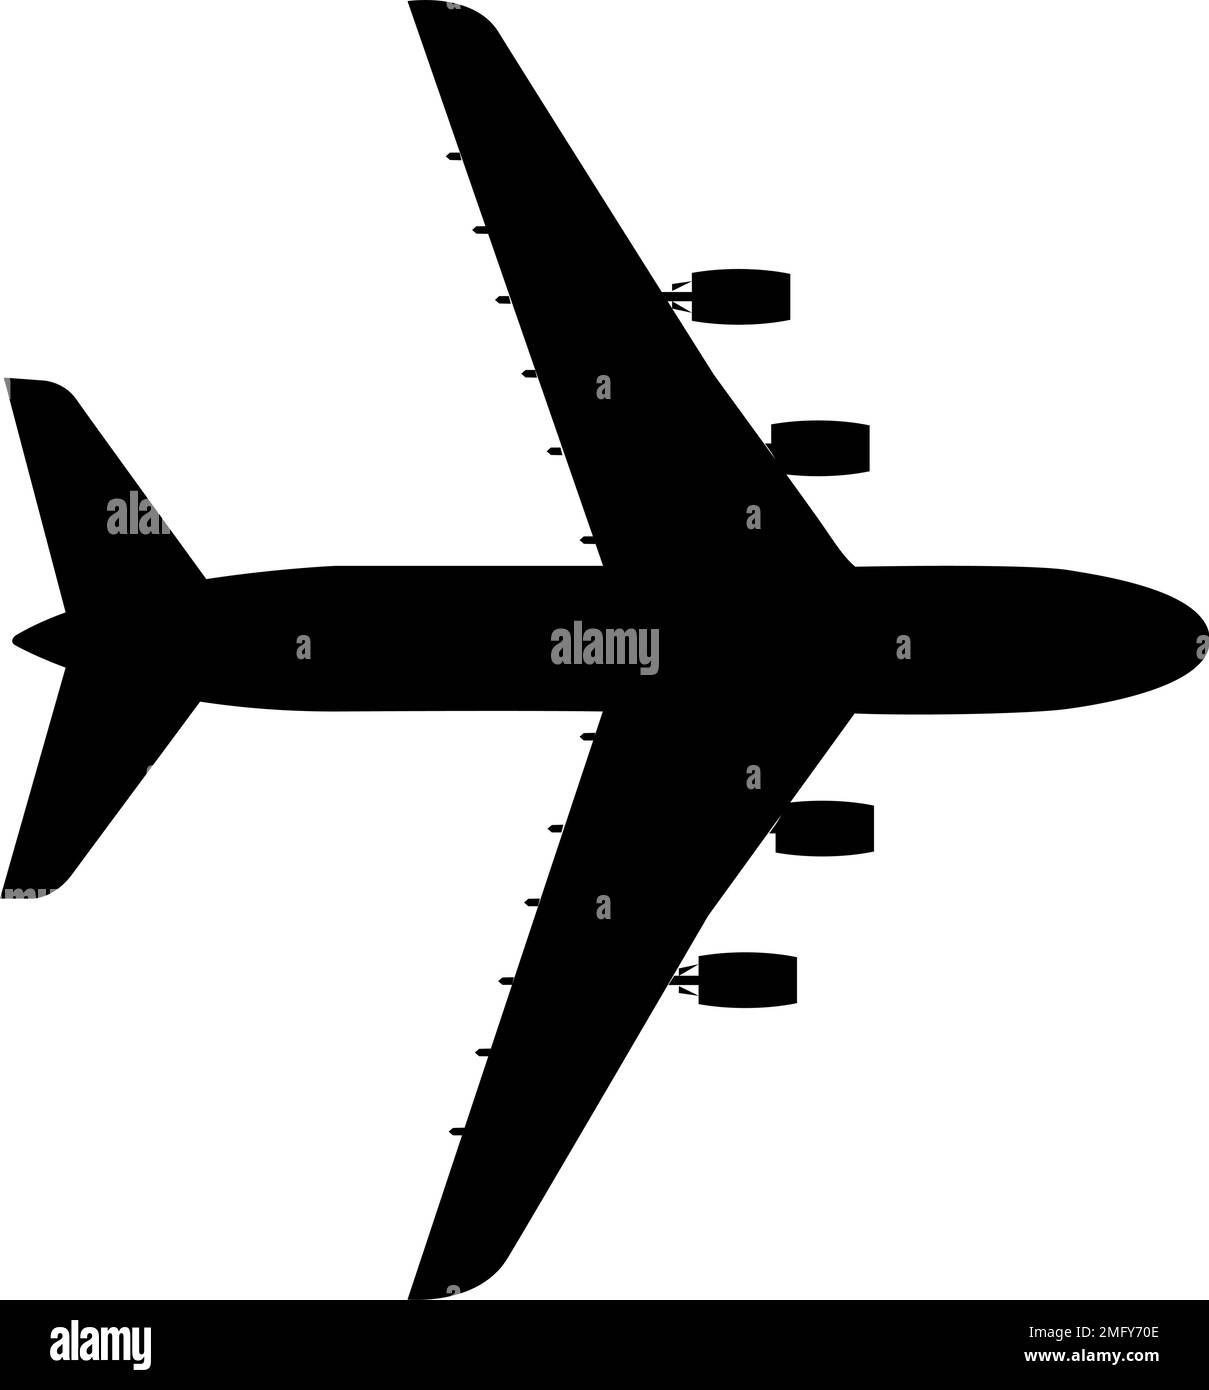 Silueta de aviones de pasajeros sobre fondo blanco. Ilustración del Vector